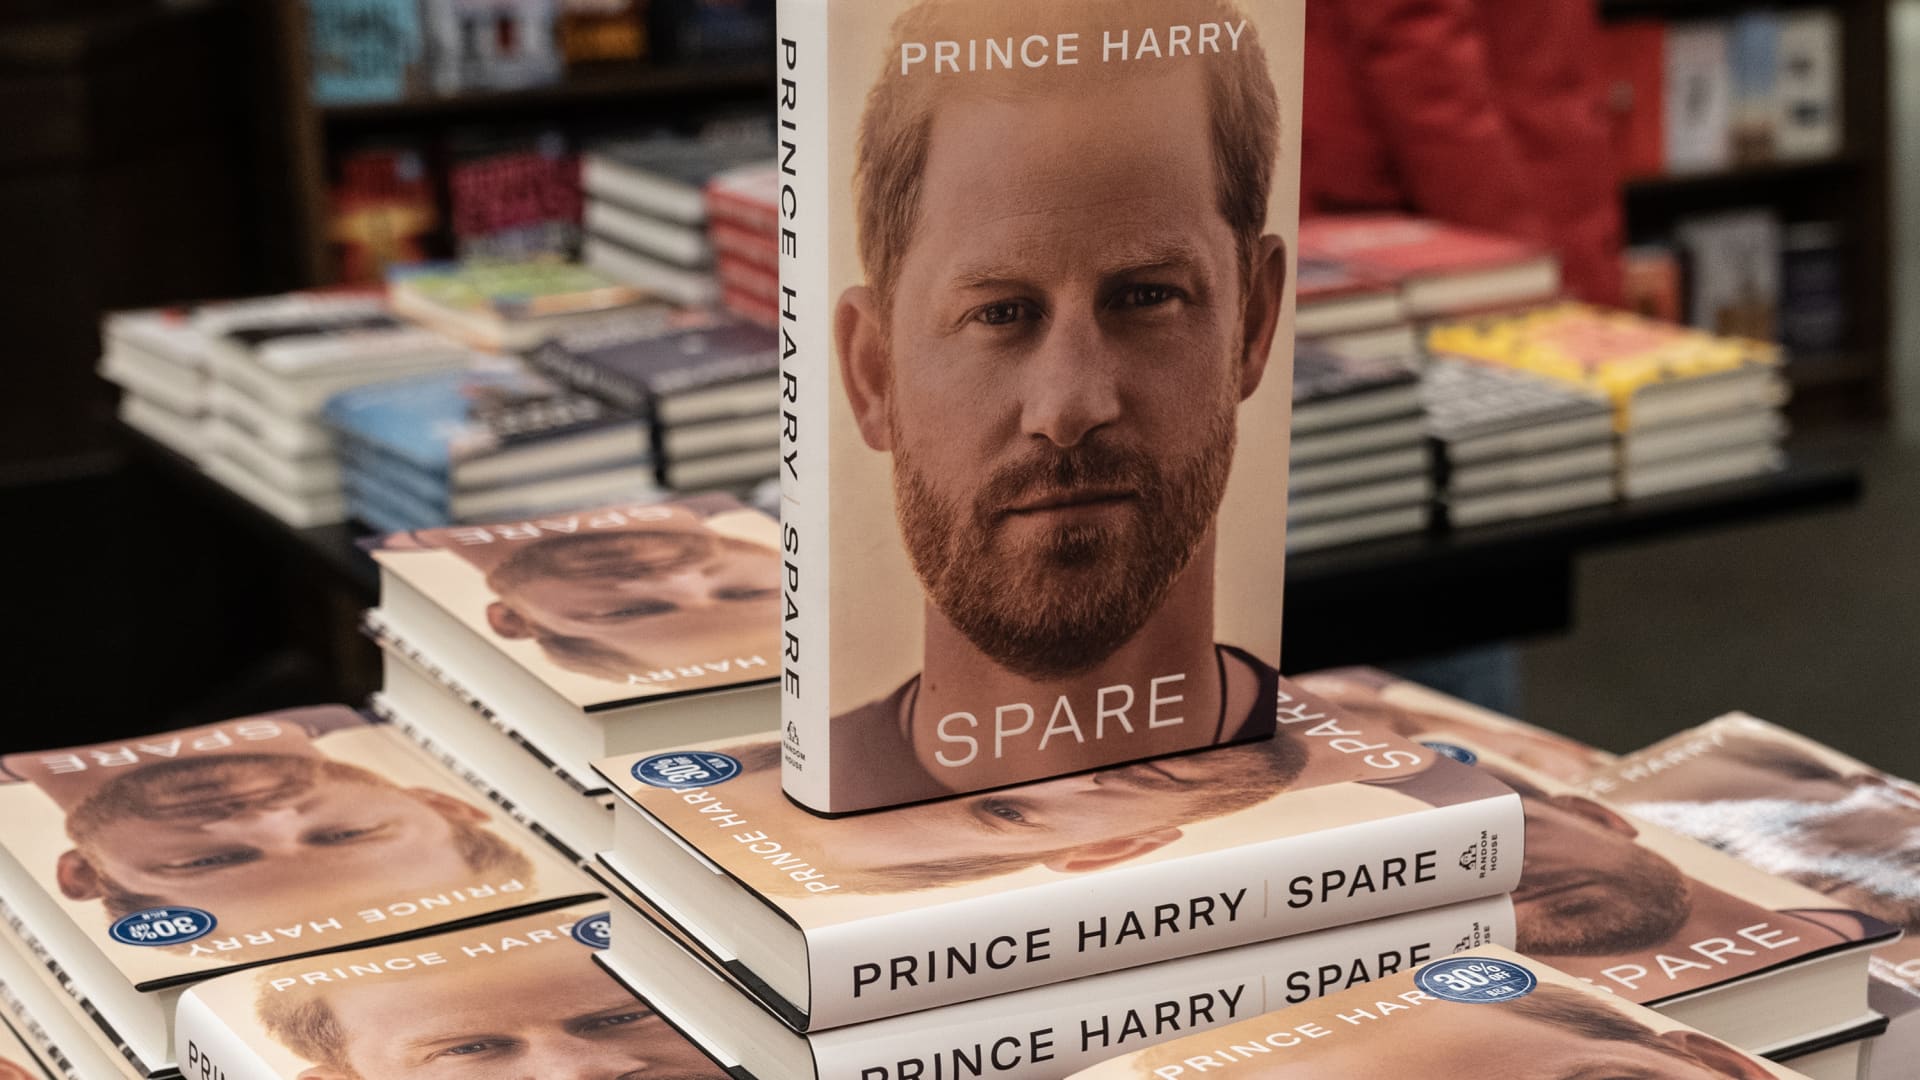 Der Ghostwriter von Prinz Harry hat auch die Bestseller-Memoiren Nike geschrieben